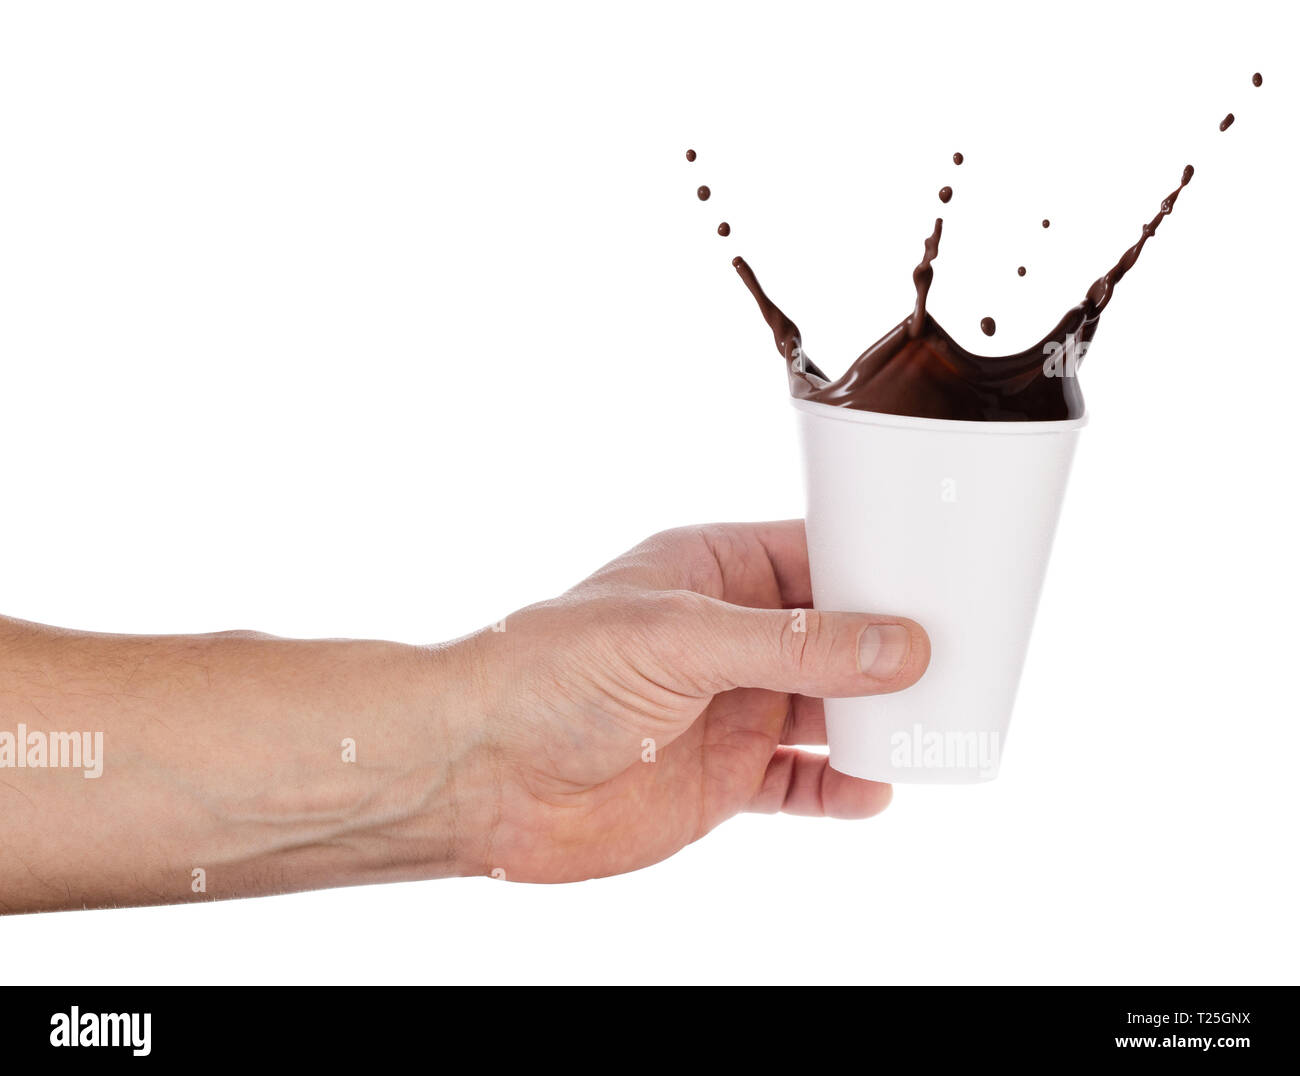 Jetables en verre blanc avec une touche de chocolat chaud dans une main tendue. Isolé sur fond blanc. Préparation pour le projet de conception Banque D'Images